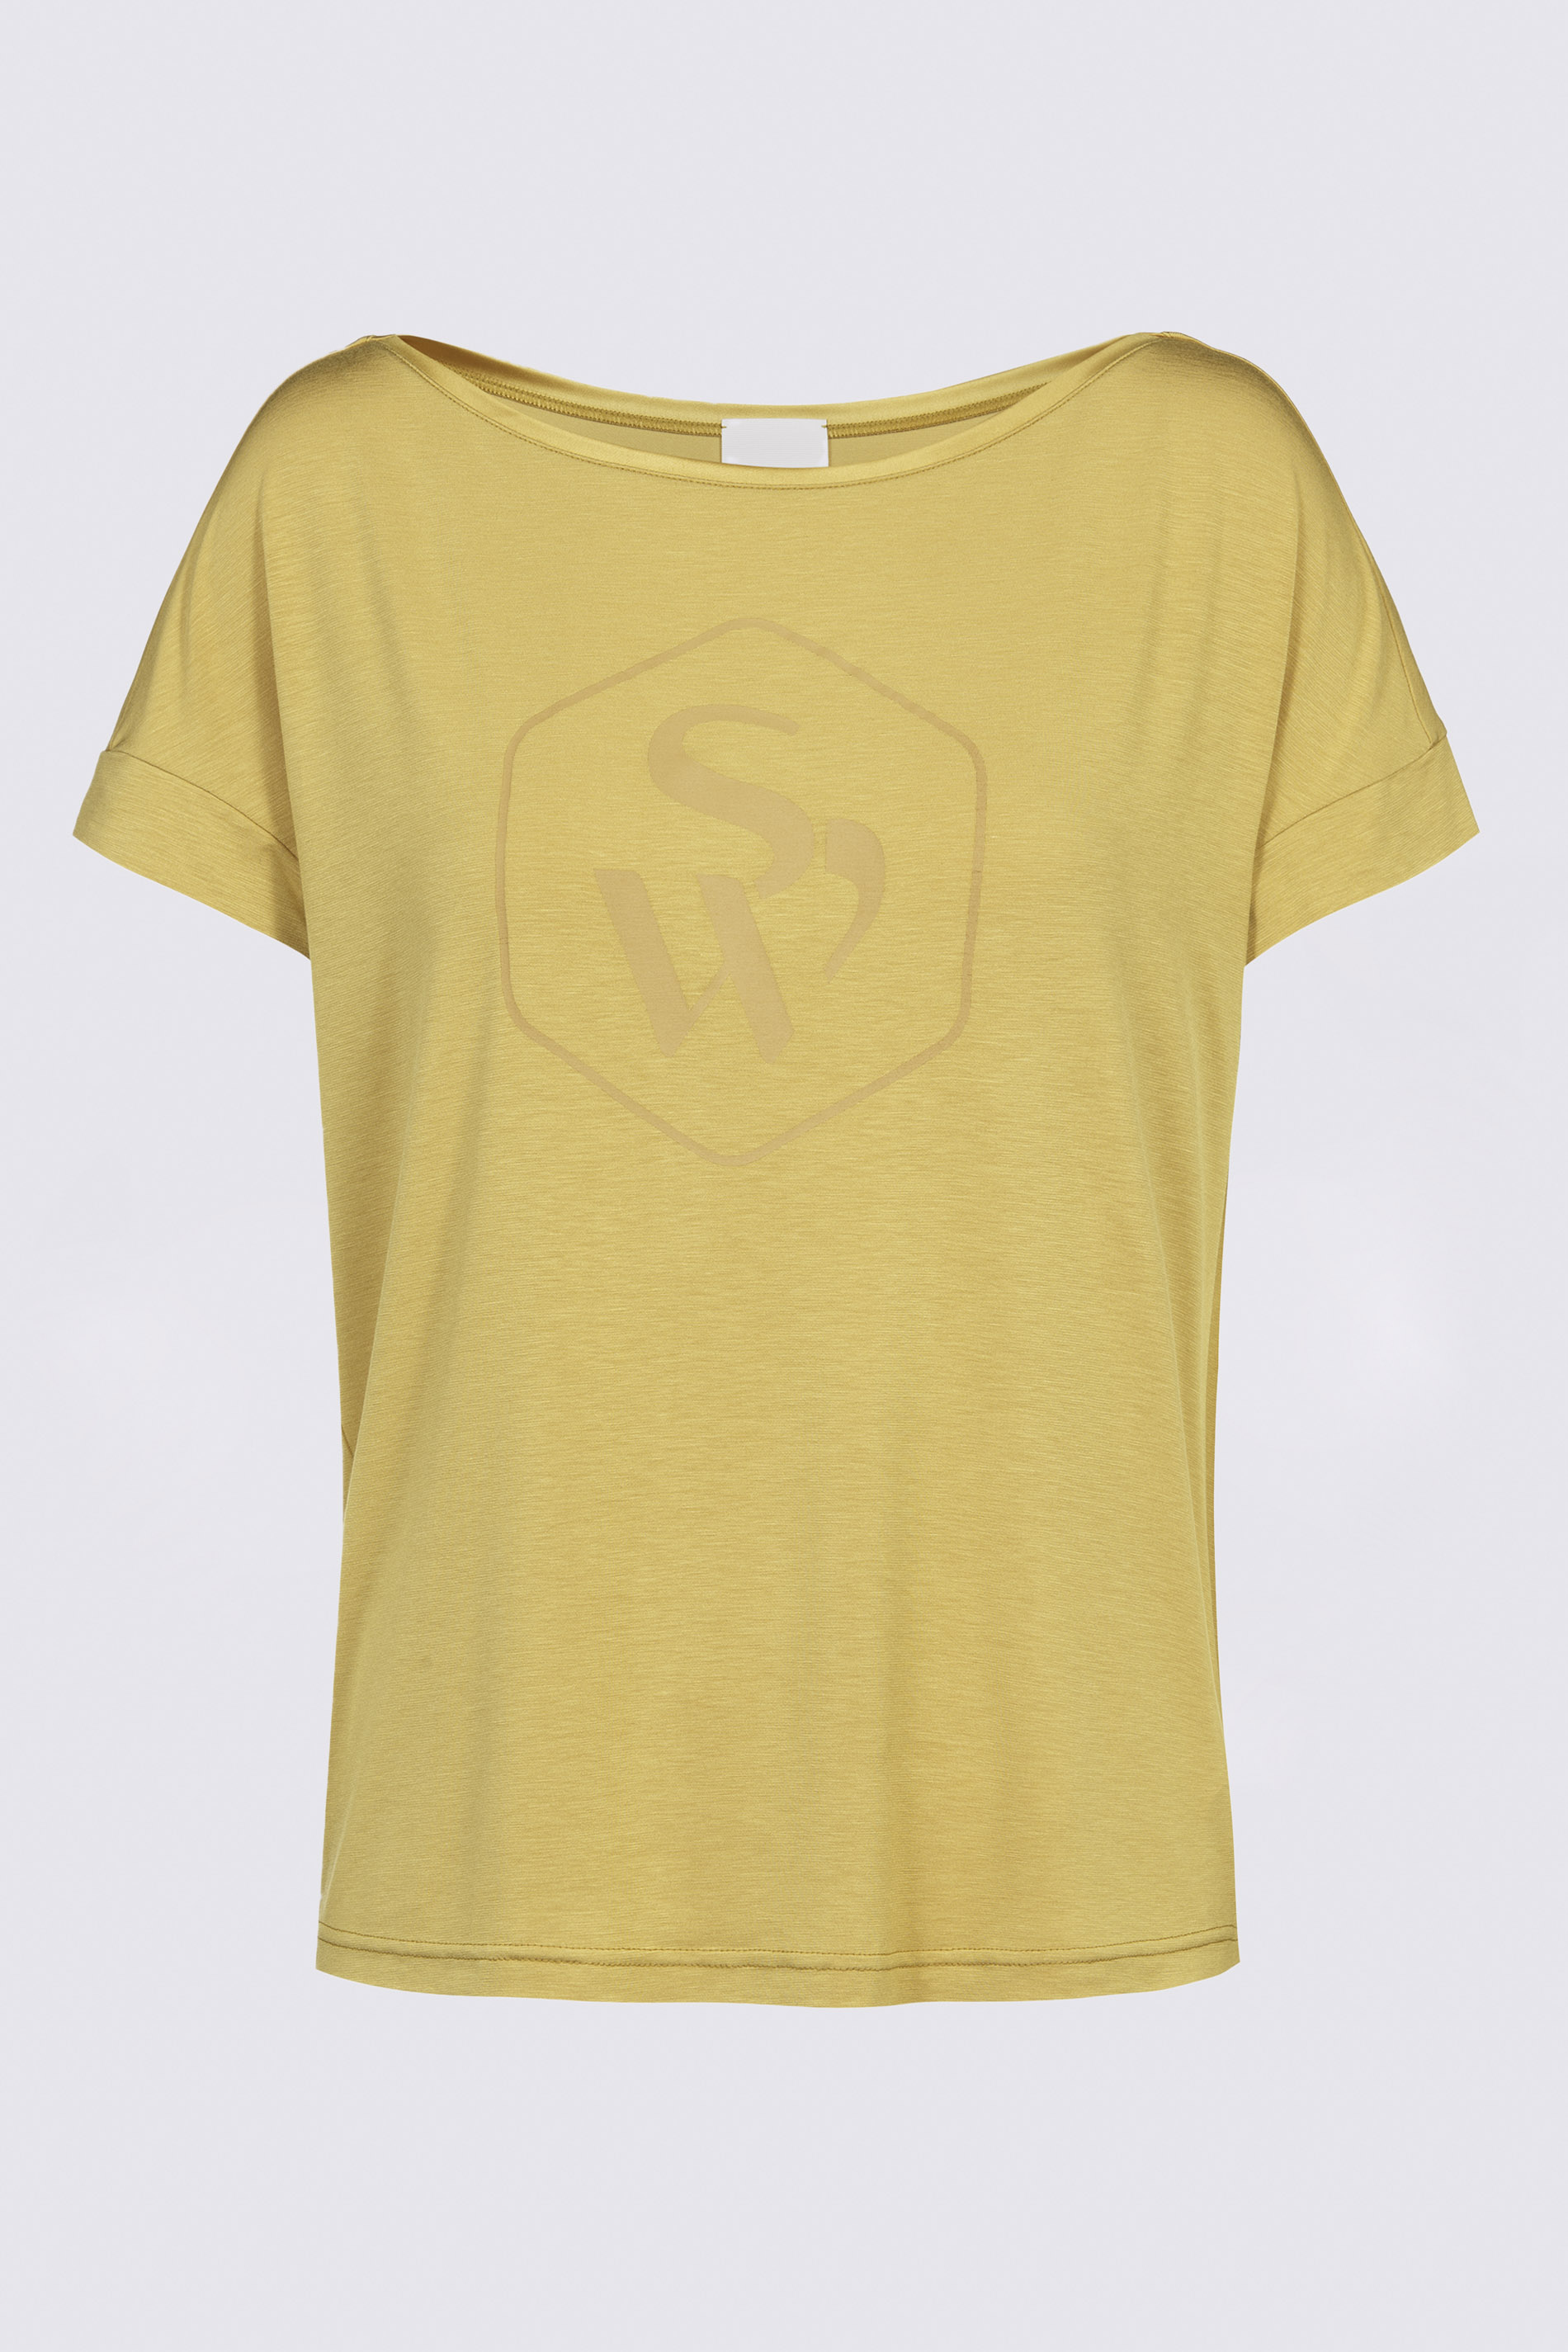 T-Shirt Wintergold Serie Breathable Freisteller | mey®